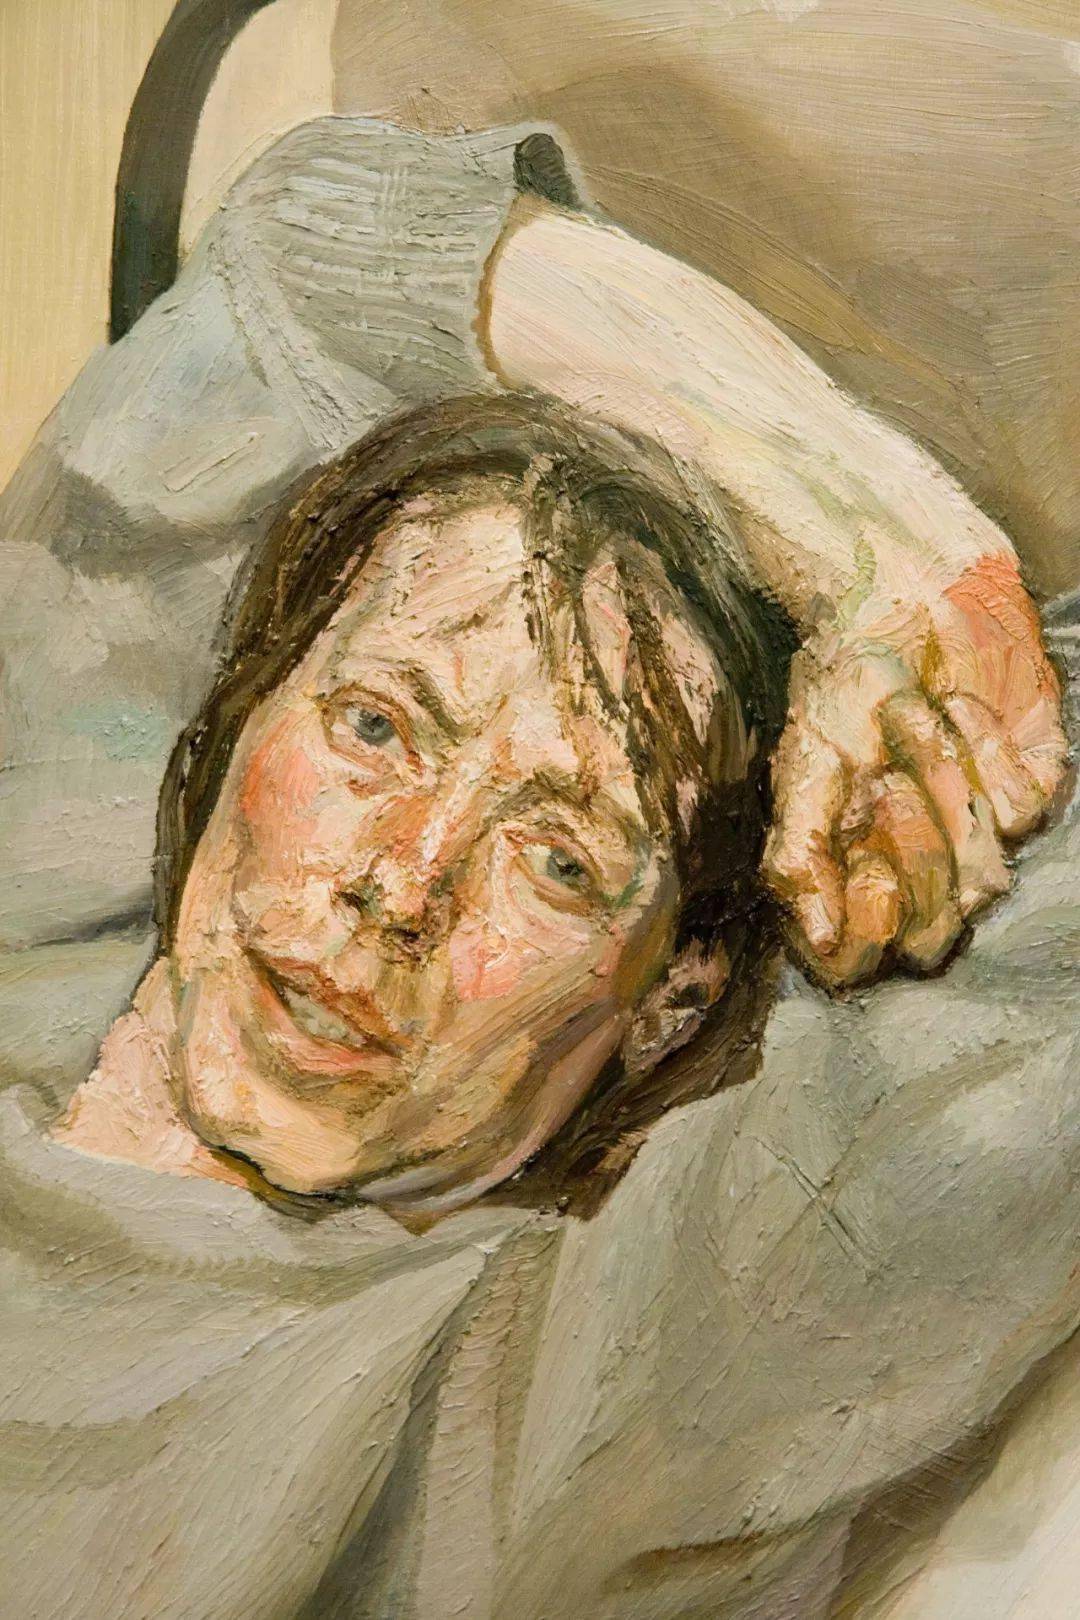 英国最伟大的当代画家,表现派画家卢西安·弗洛伊德油画作品欣赏!